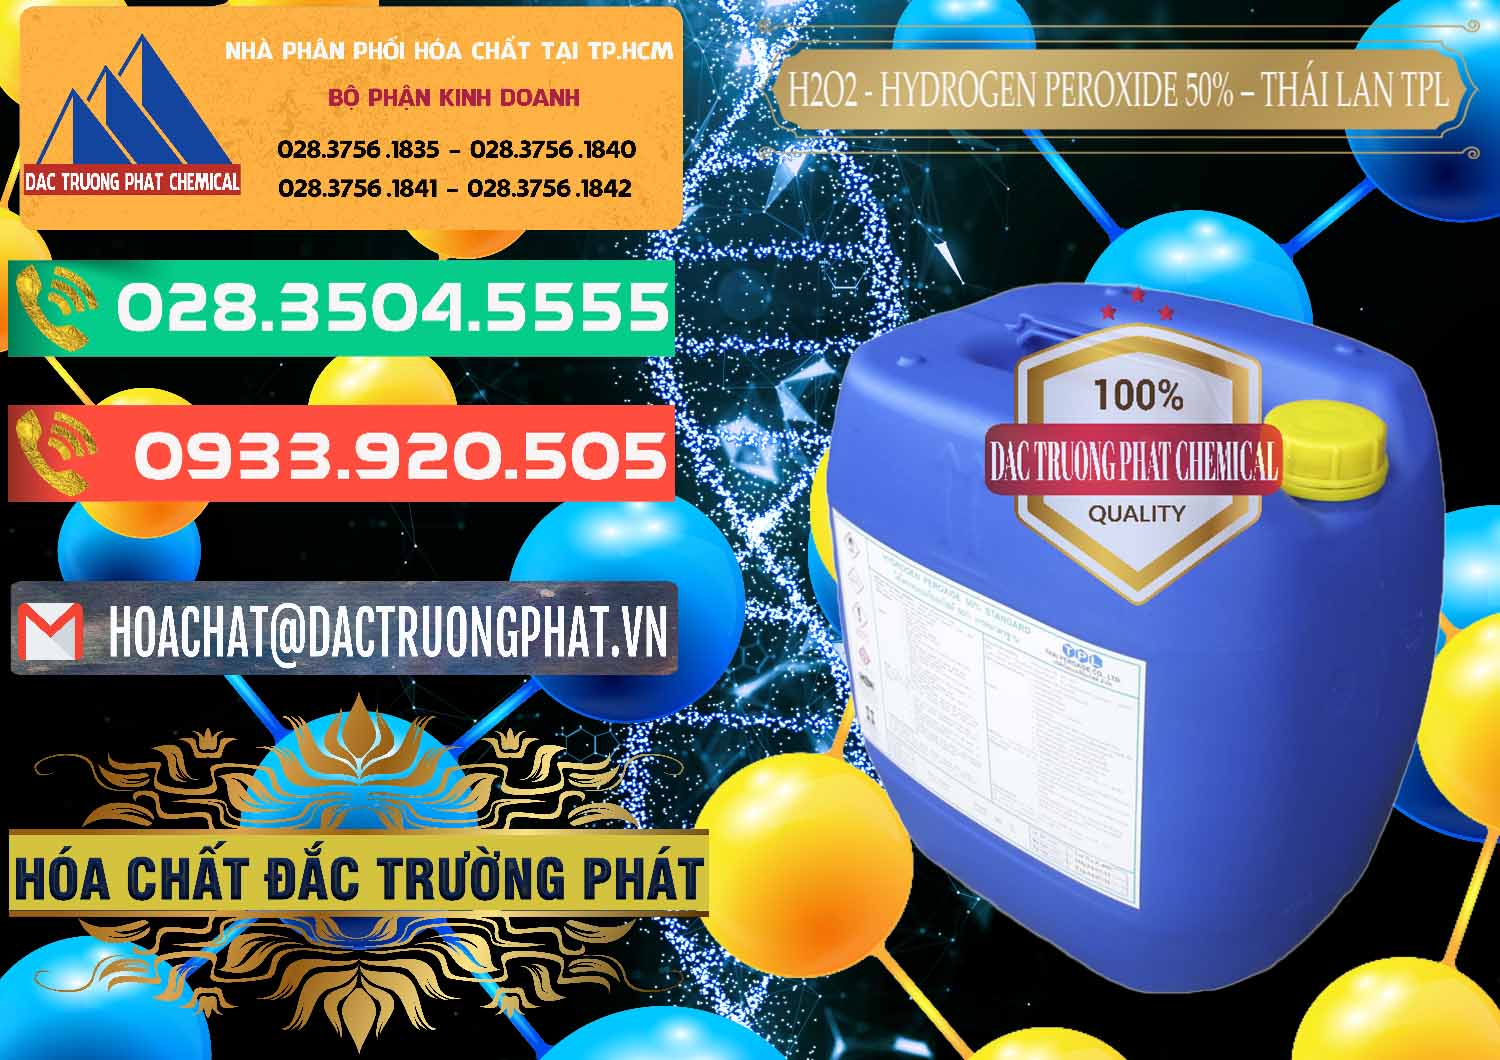 Đơn vị nhập khẩu - bán H2O2 - Hydrogen Peroxide 50% Thái Lan TPL - 0076 - Chuyên phân phối ( nhập khẩu ) hóa chất tại TP.HCM - congtyhoachat.com.vn